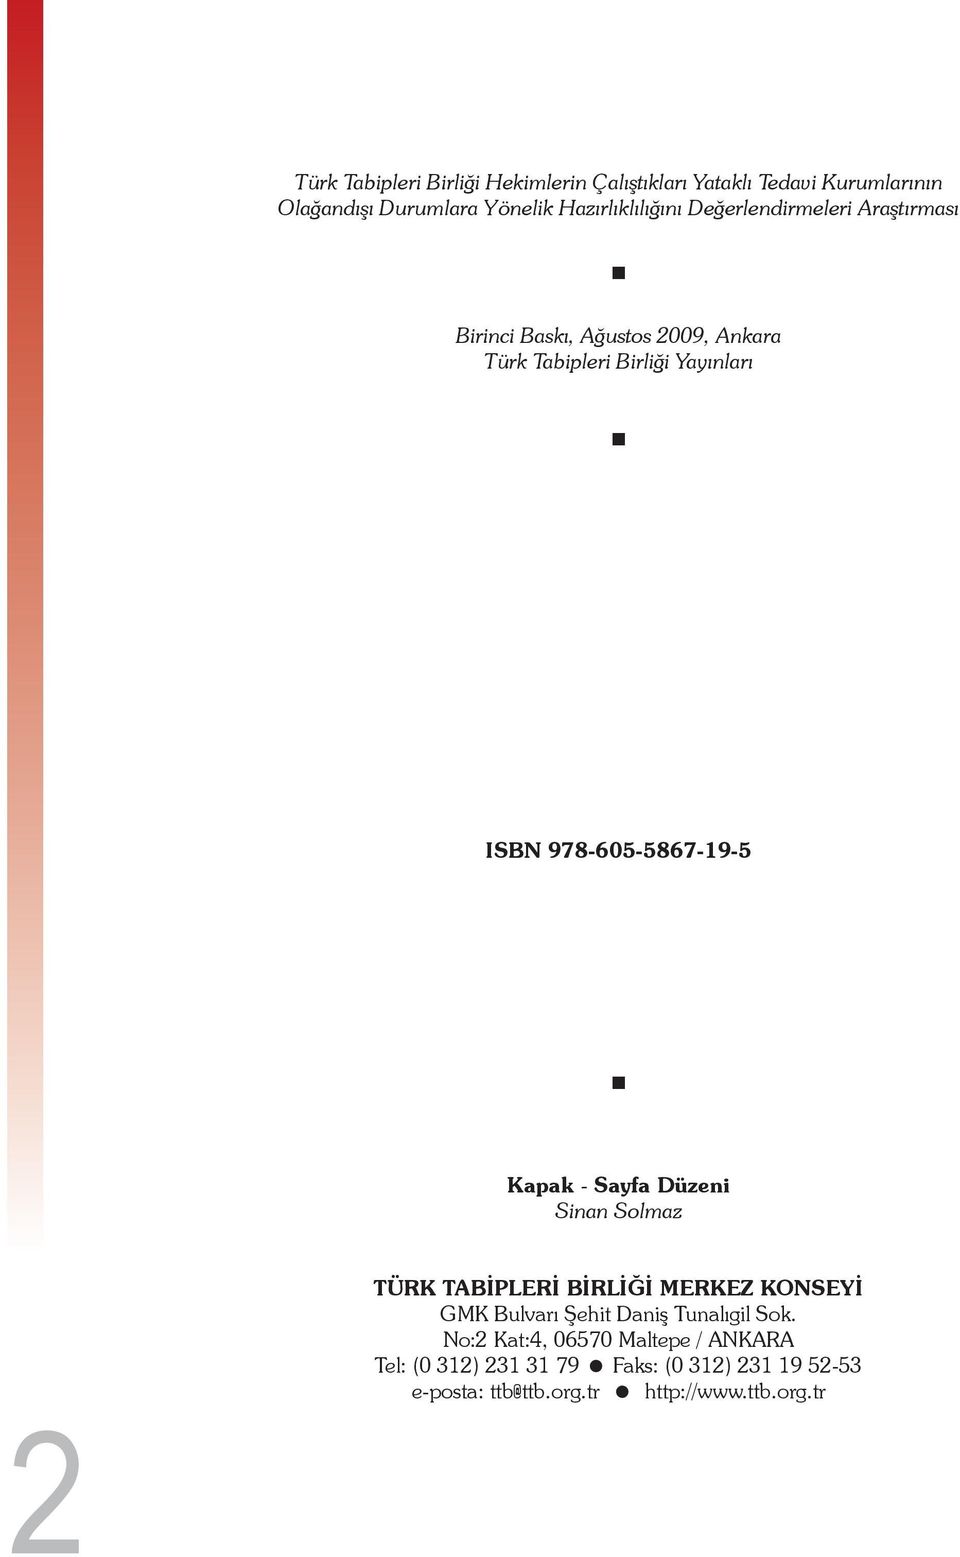 978-605-5867-19-5 Kapak - Sayfa Düzeni Sinan Solmaz TÜRK TABİPLERİ BİRLİĞİ MERKEZ KONSEYİ GMK Bulvarı Şehit Daniş